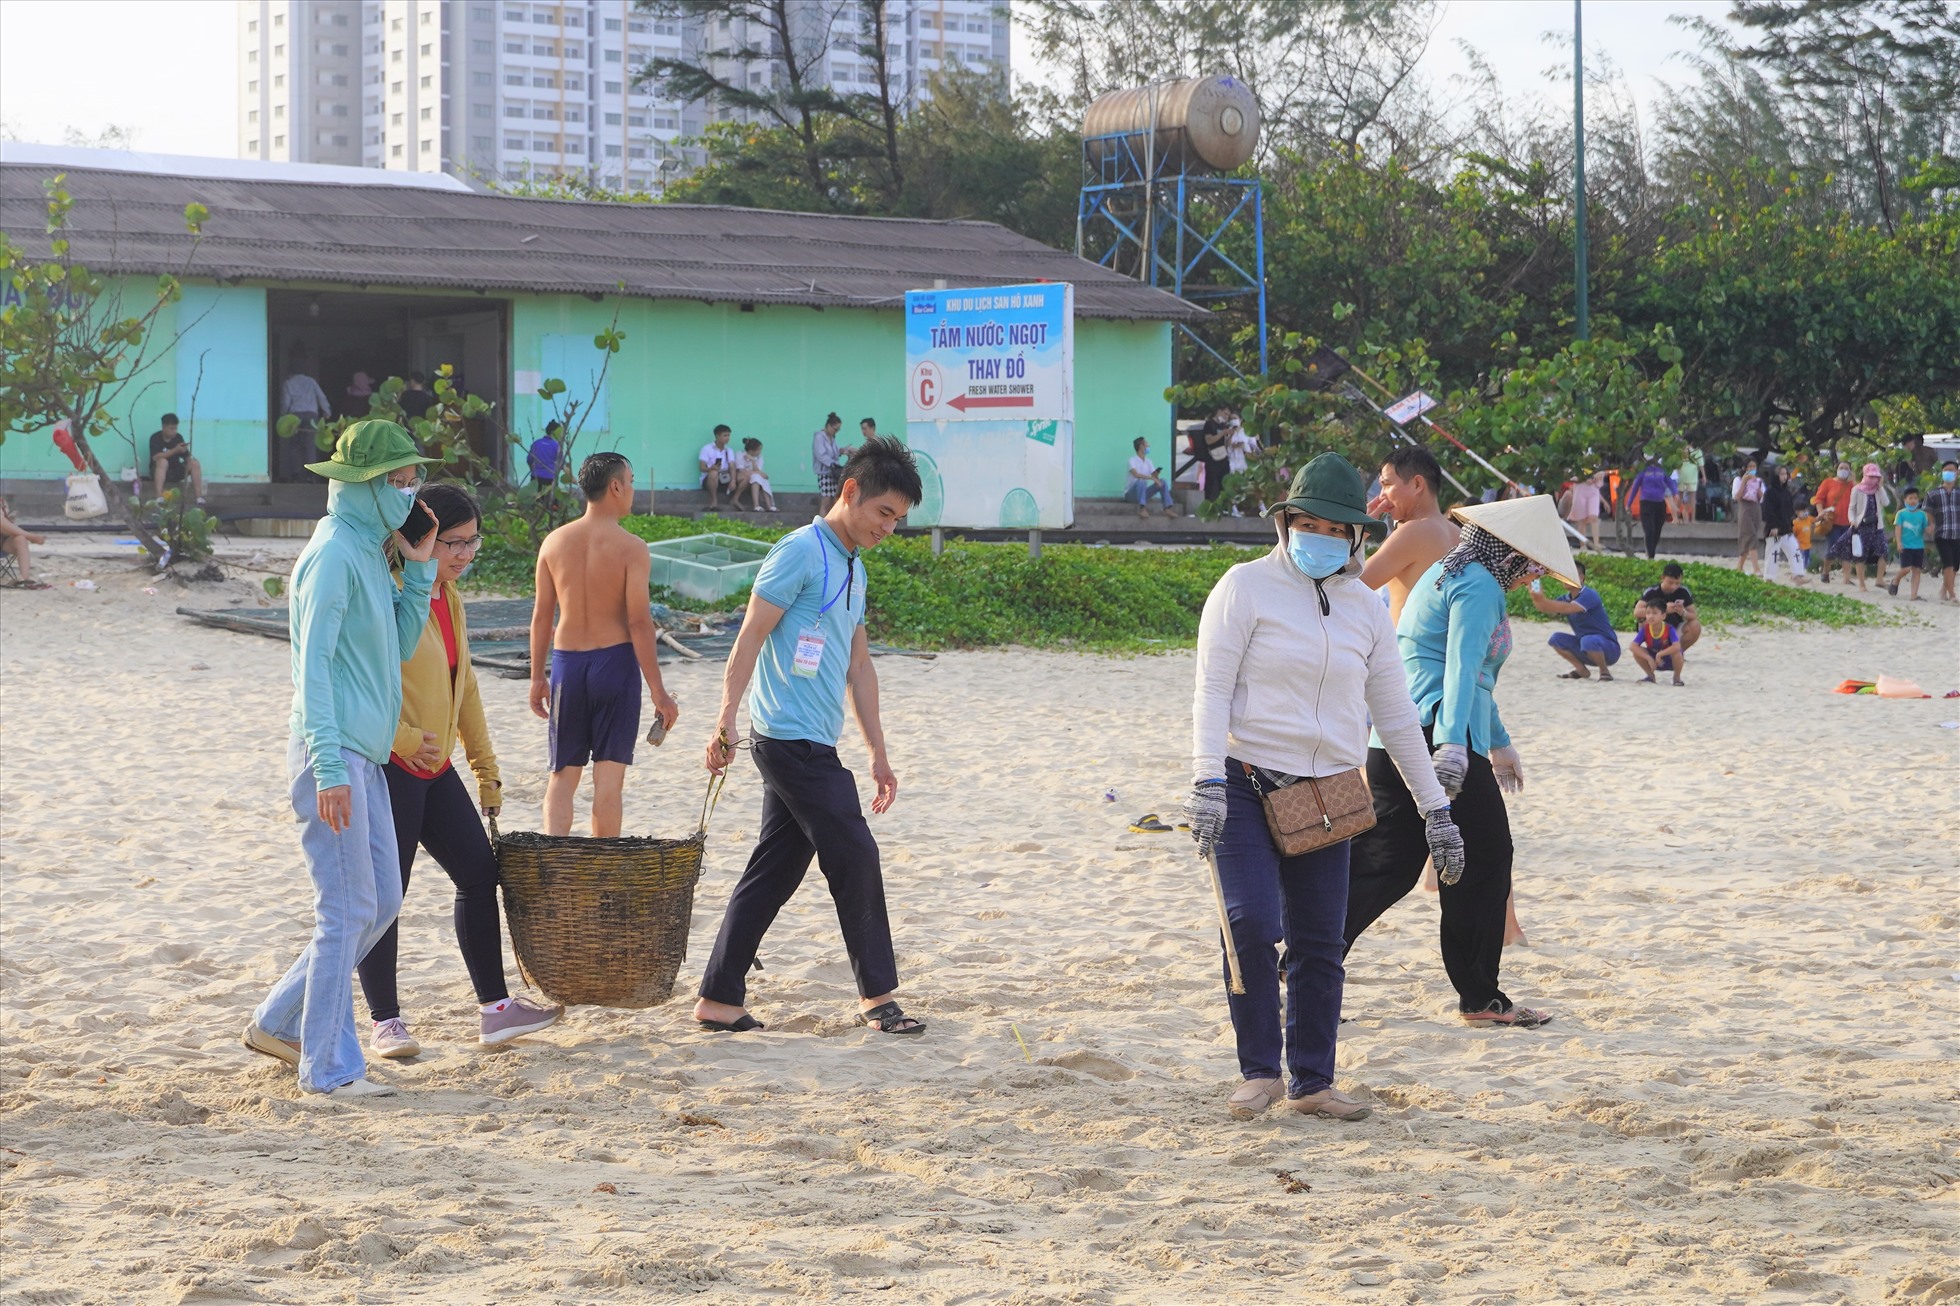 Mùa này, những con sóng đẩy một lượng lớn rác và rong biển vào bờ. Vì thế chính quyền địa phương đã huy động nhiều lực lượng tham gia dọn vệ sinh làm sạch bãi biển.